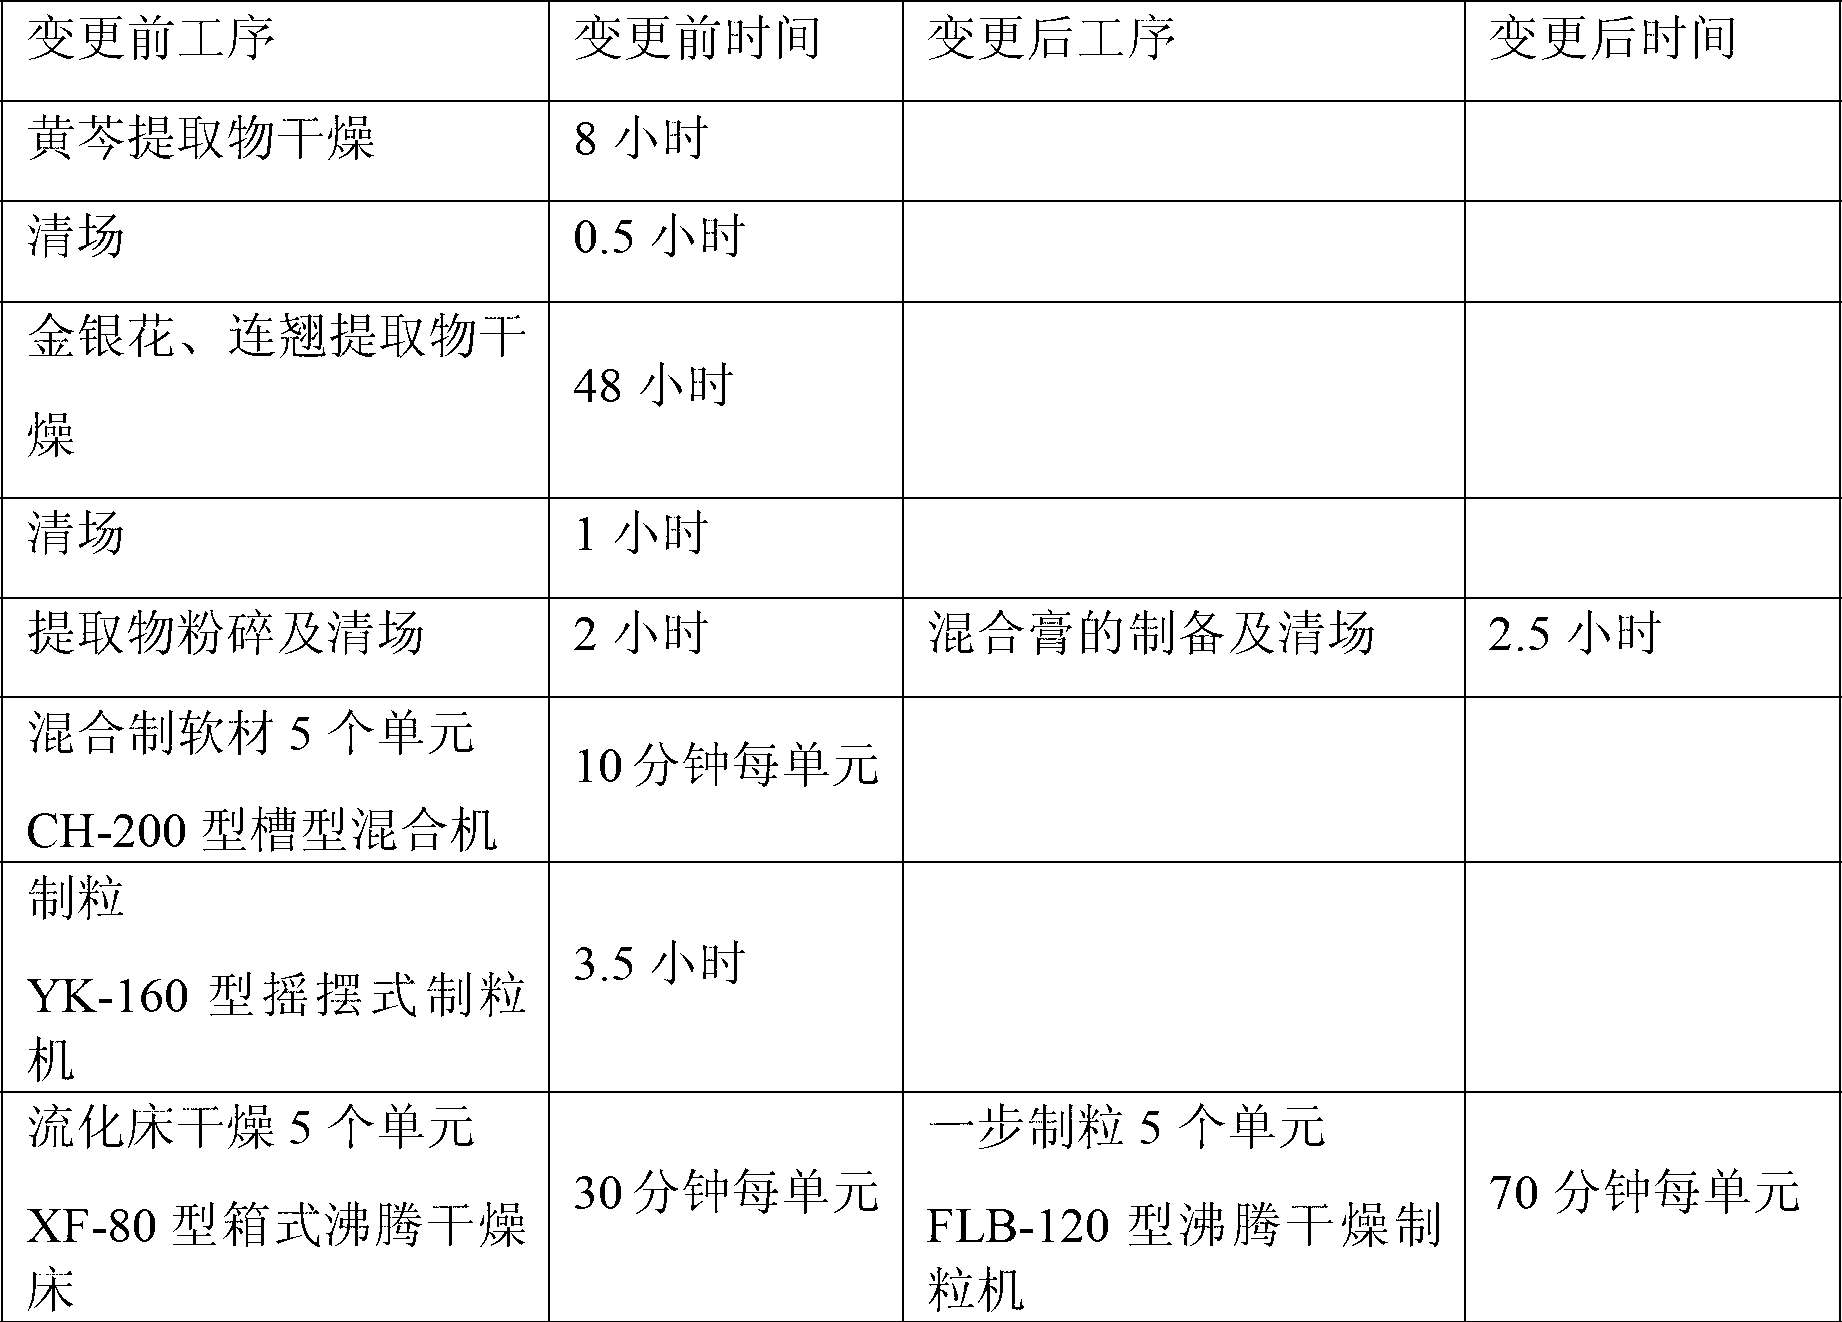 Preparation method for Shuanghuanglian granules